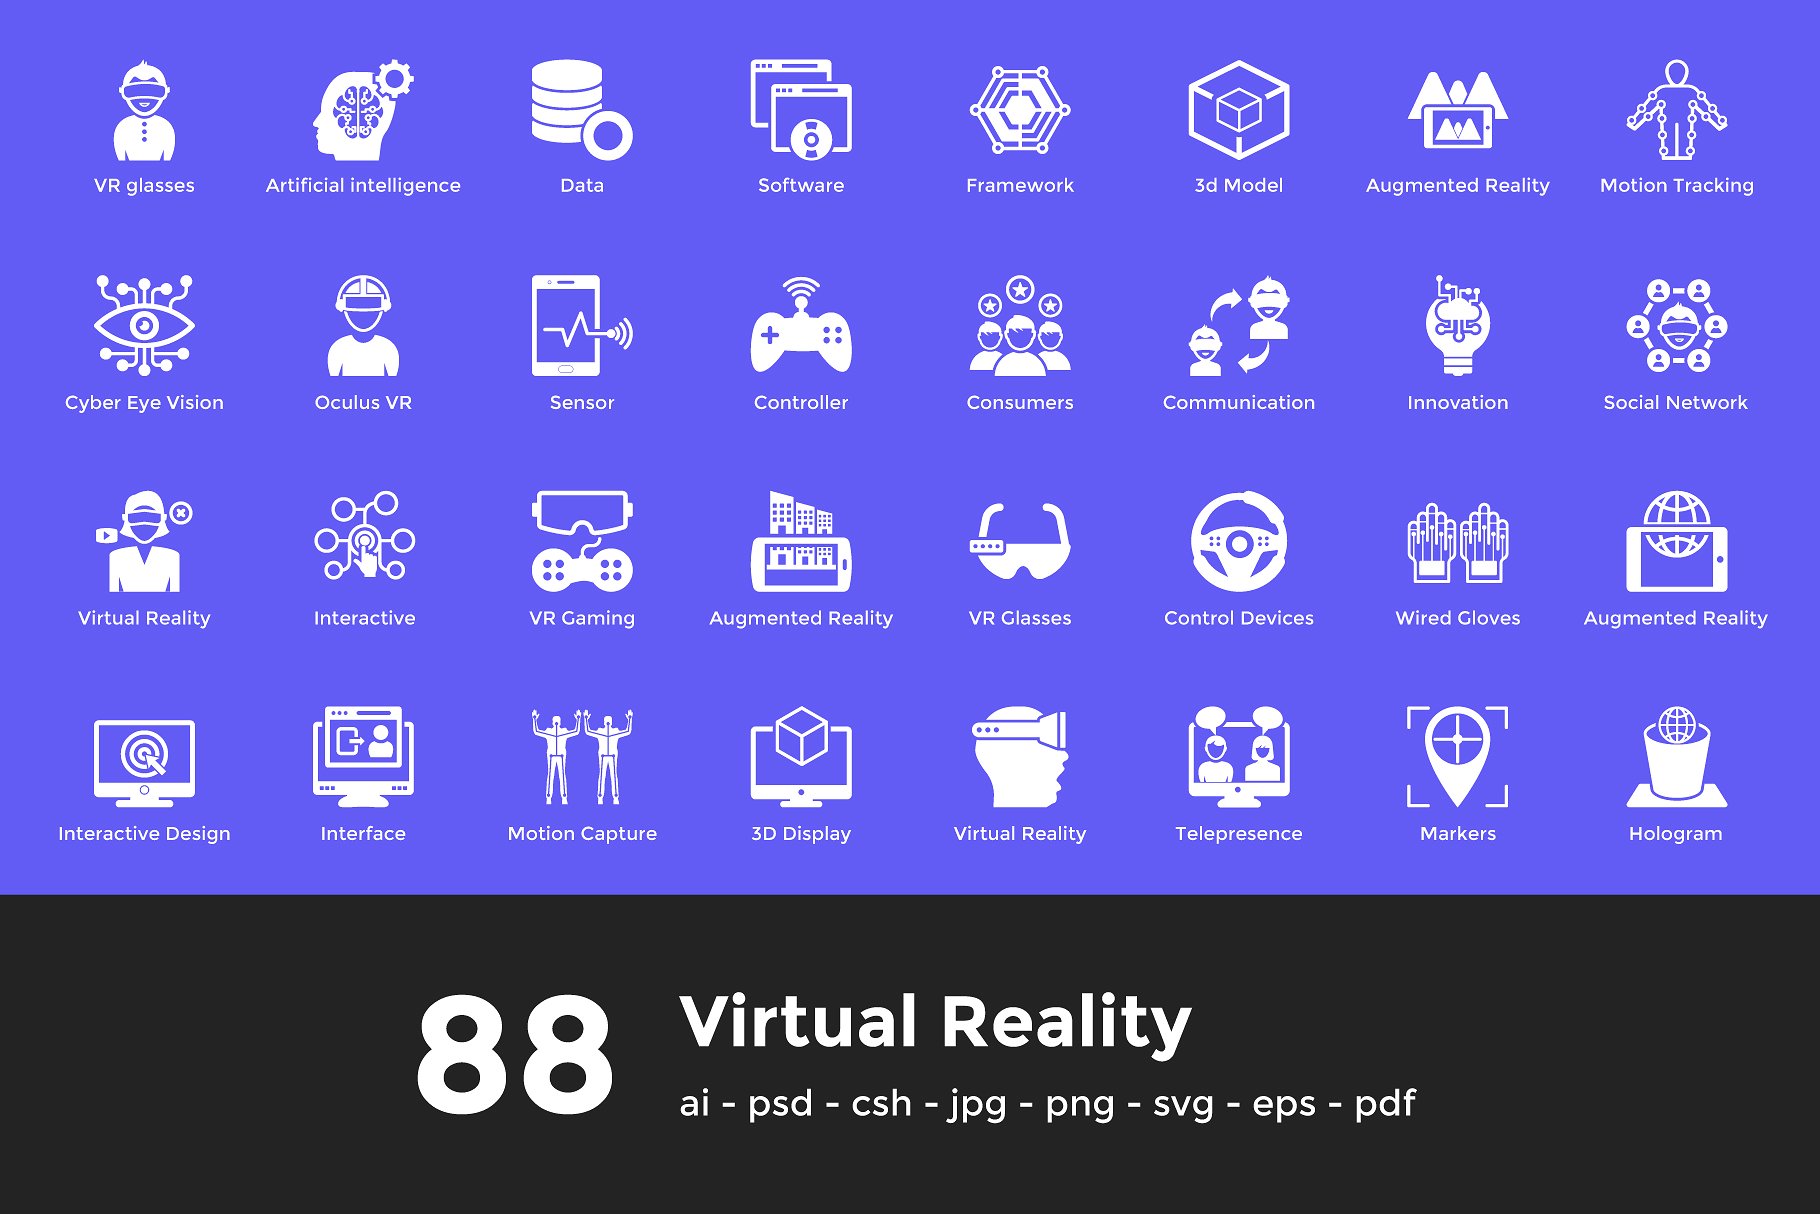 虚拟现实矢量图标素材 88 Virtual Reality